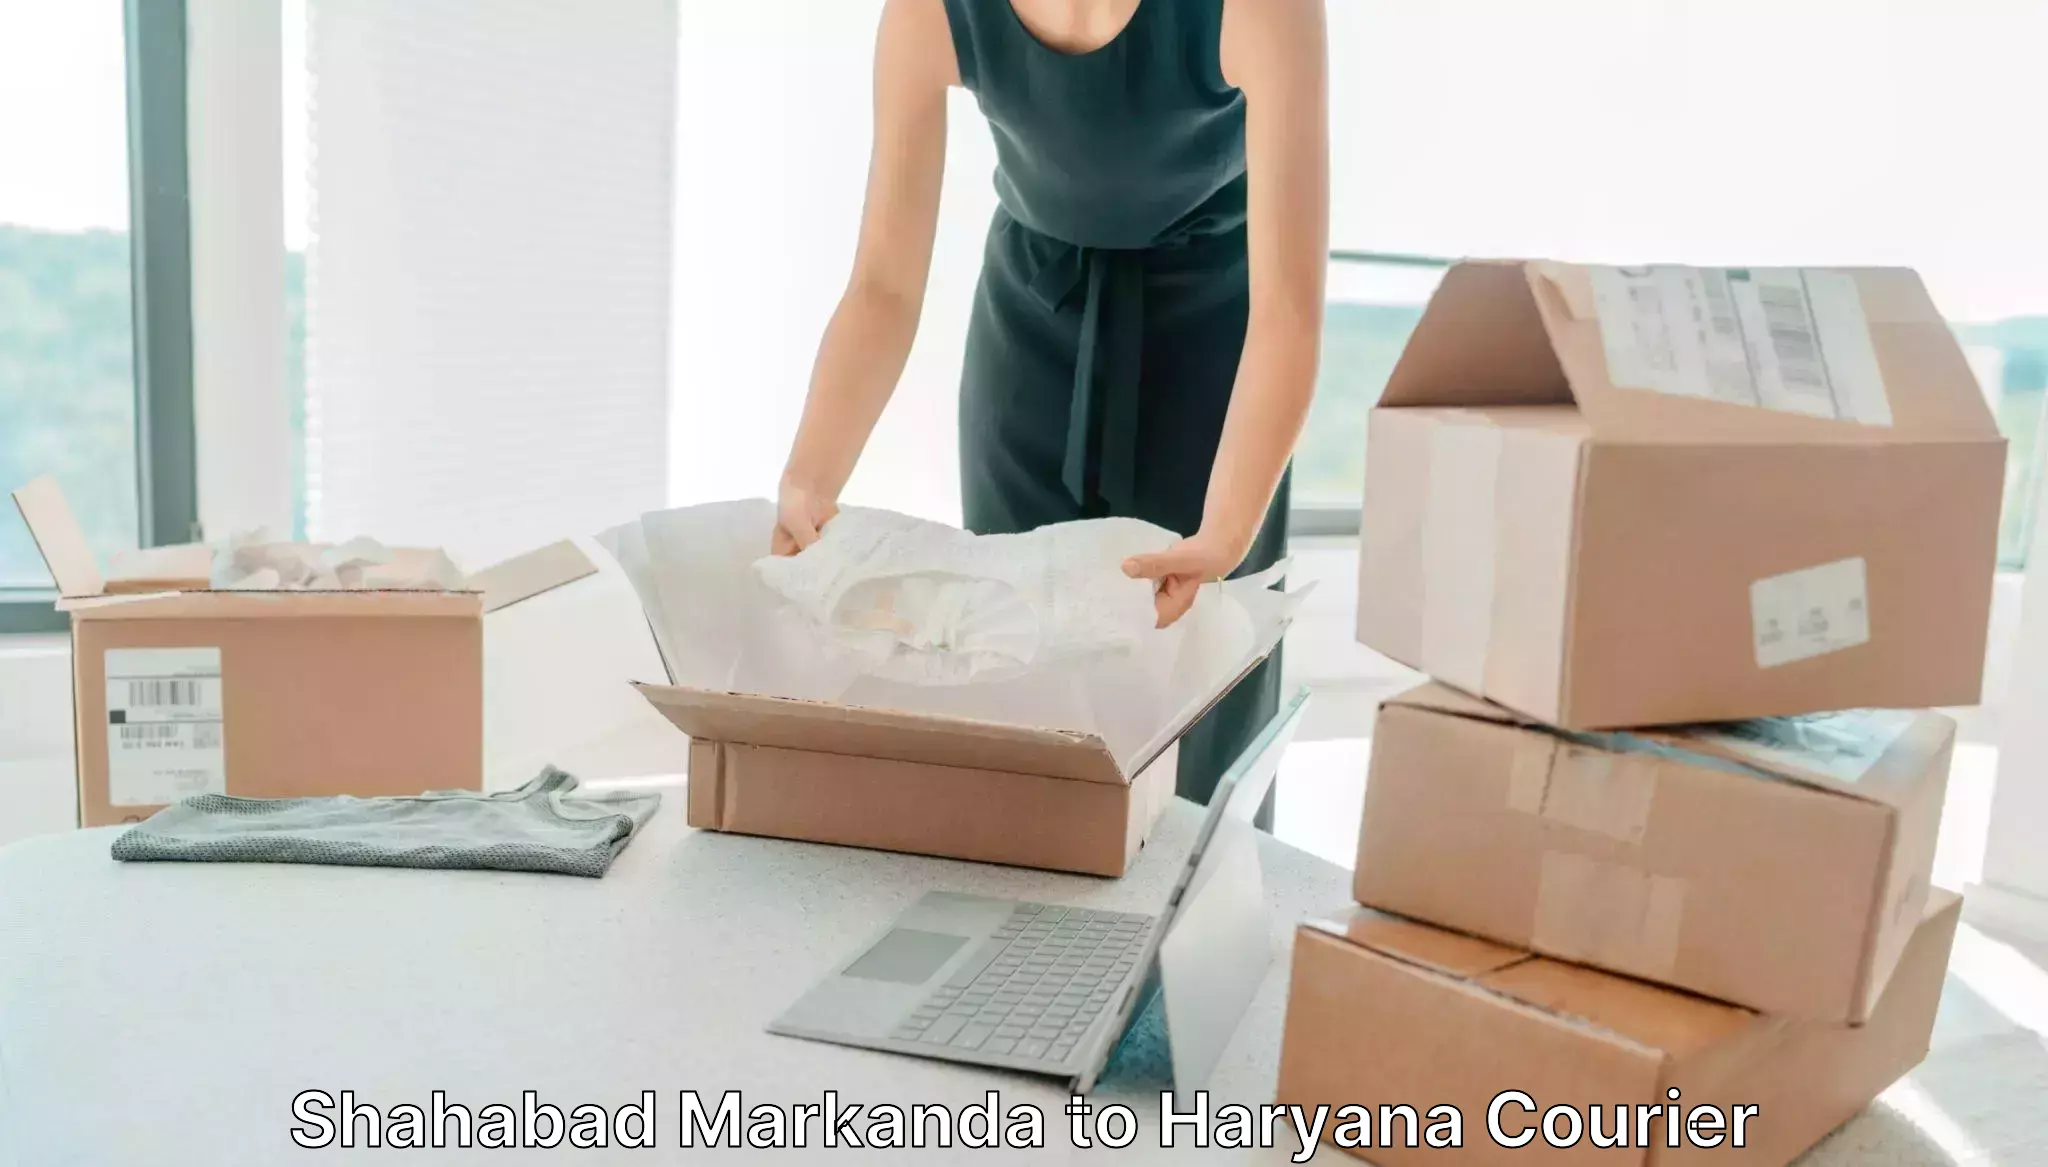 Individual parcel service Shahabad Markanda to Haryana